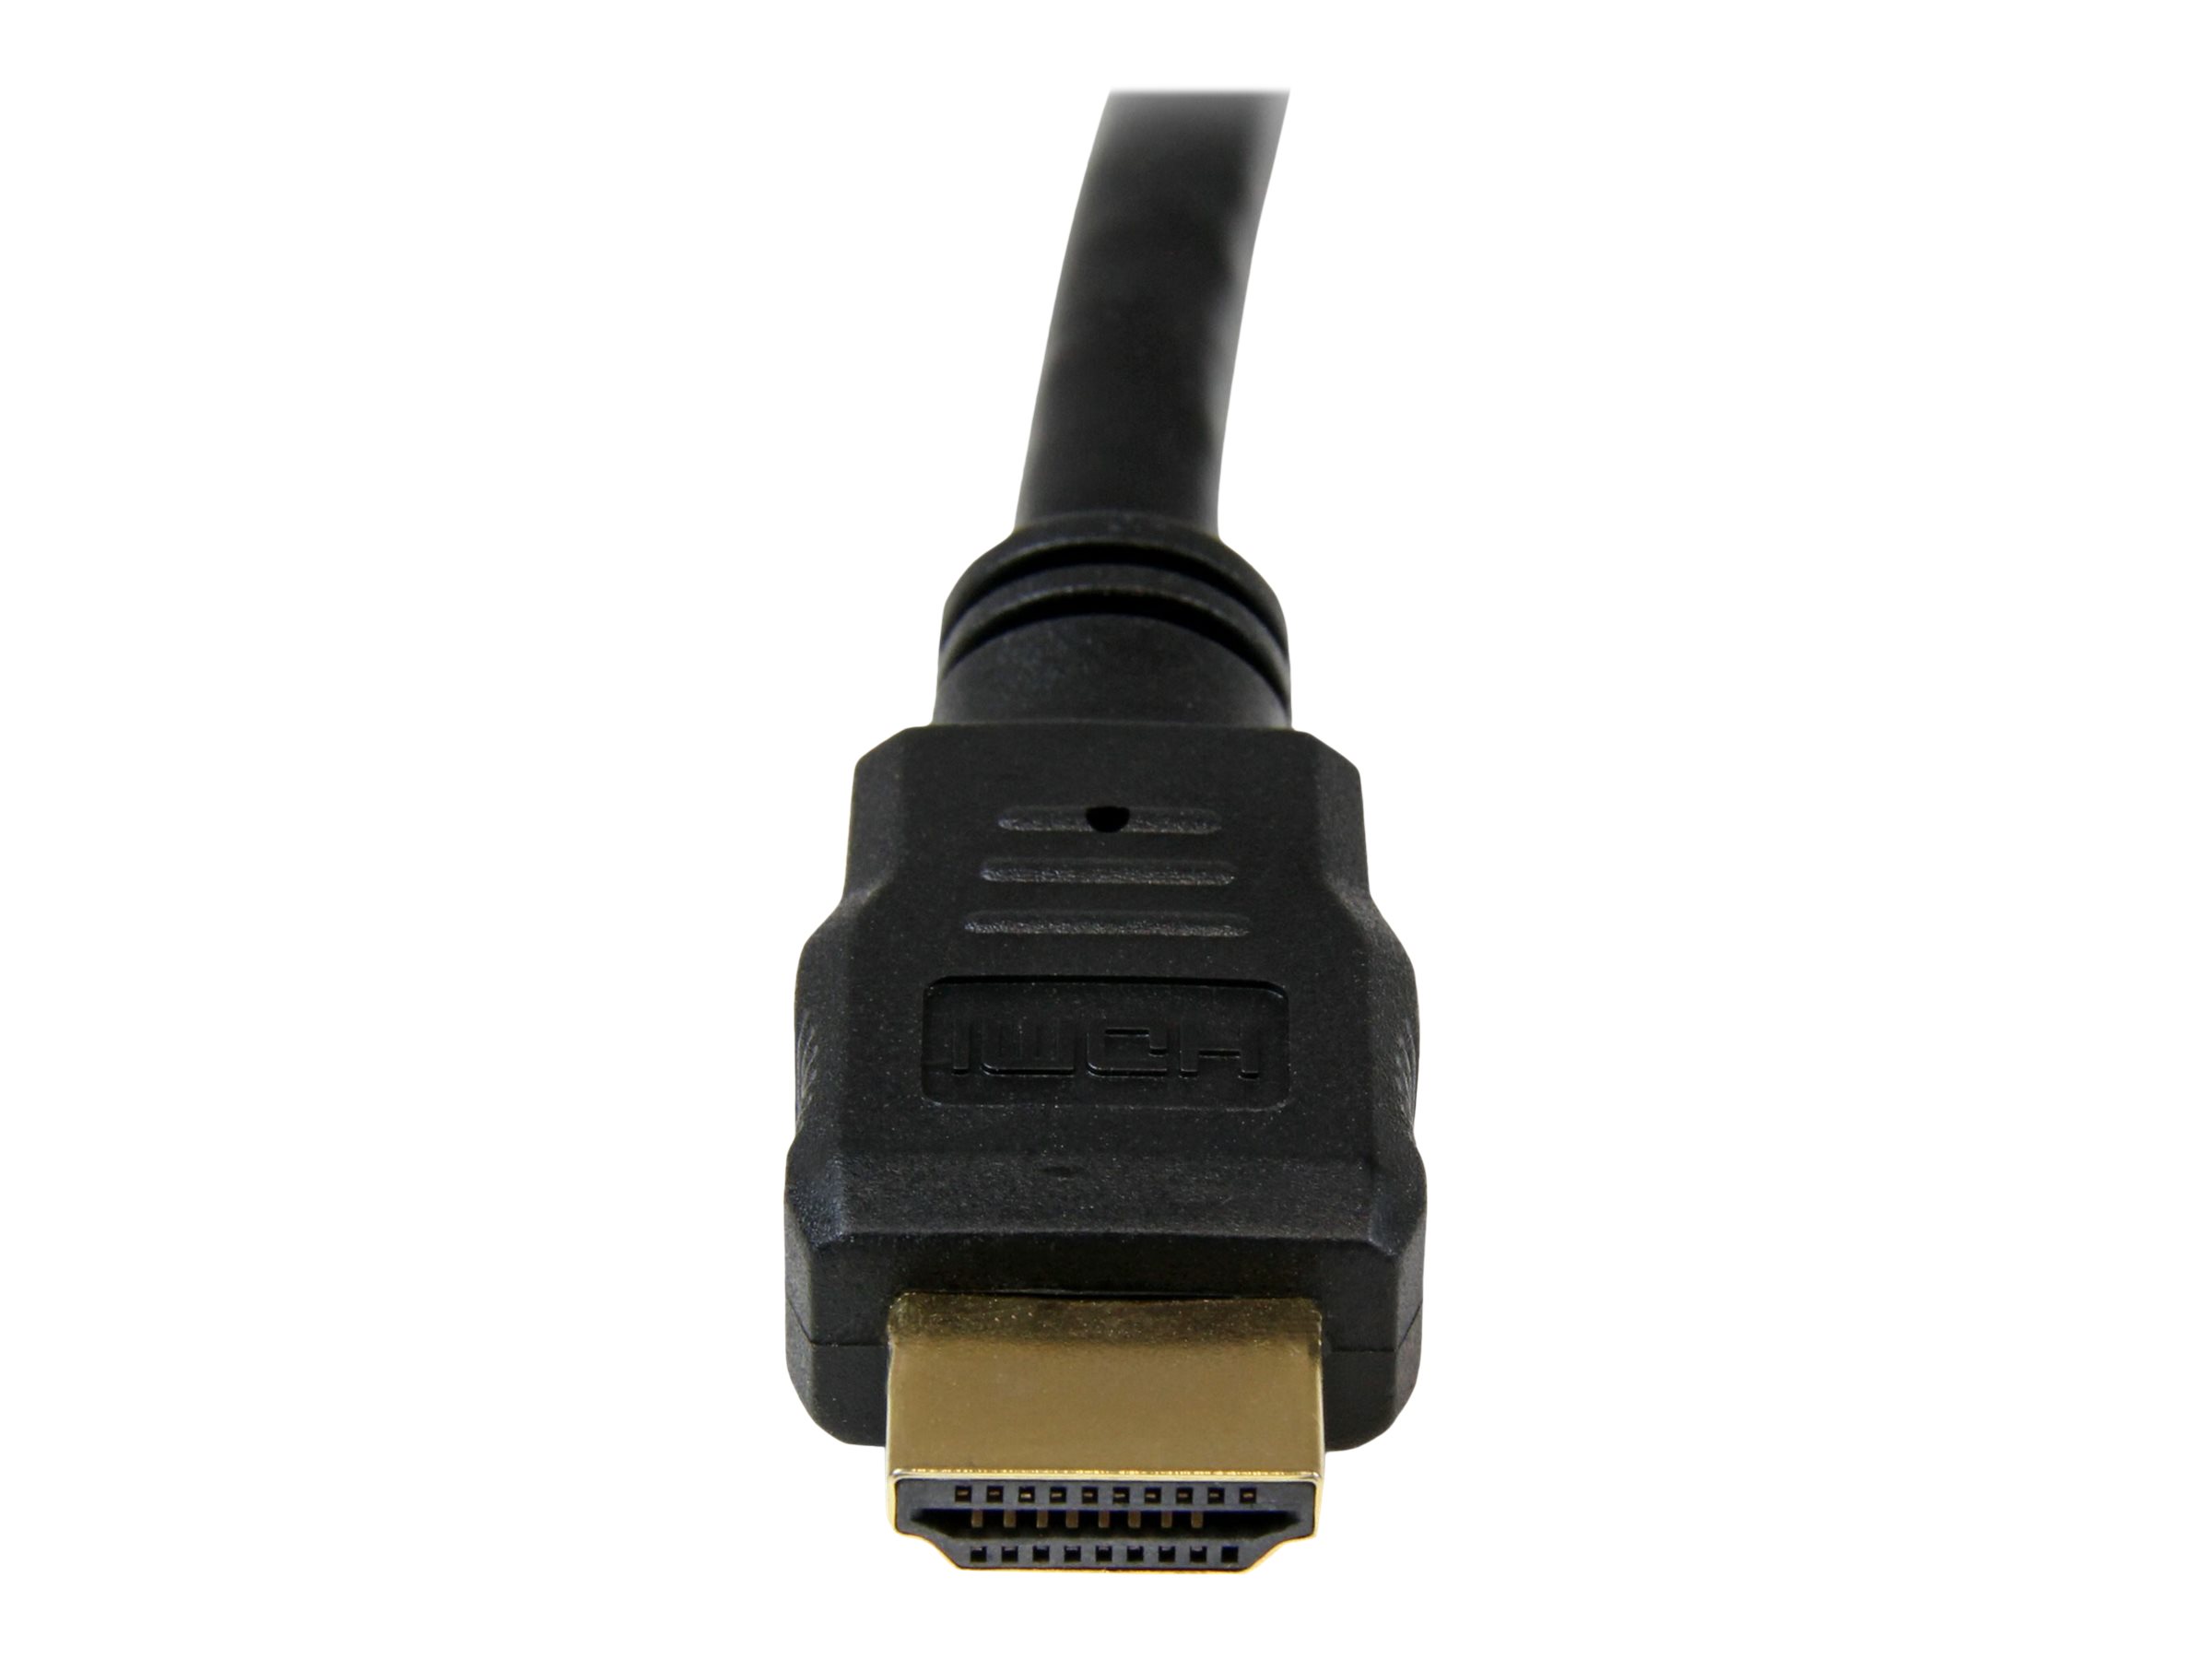 StarTech.com High-Speed-HDMI-Kabel 3m - HDMI Verbindungskabel Ultra HD 4k x 2k mit vergoldeten Kontakten - HDMI Anschlusskabel (St/St) - HDMI-Kabel - 3 m